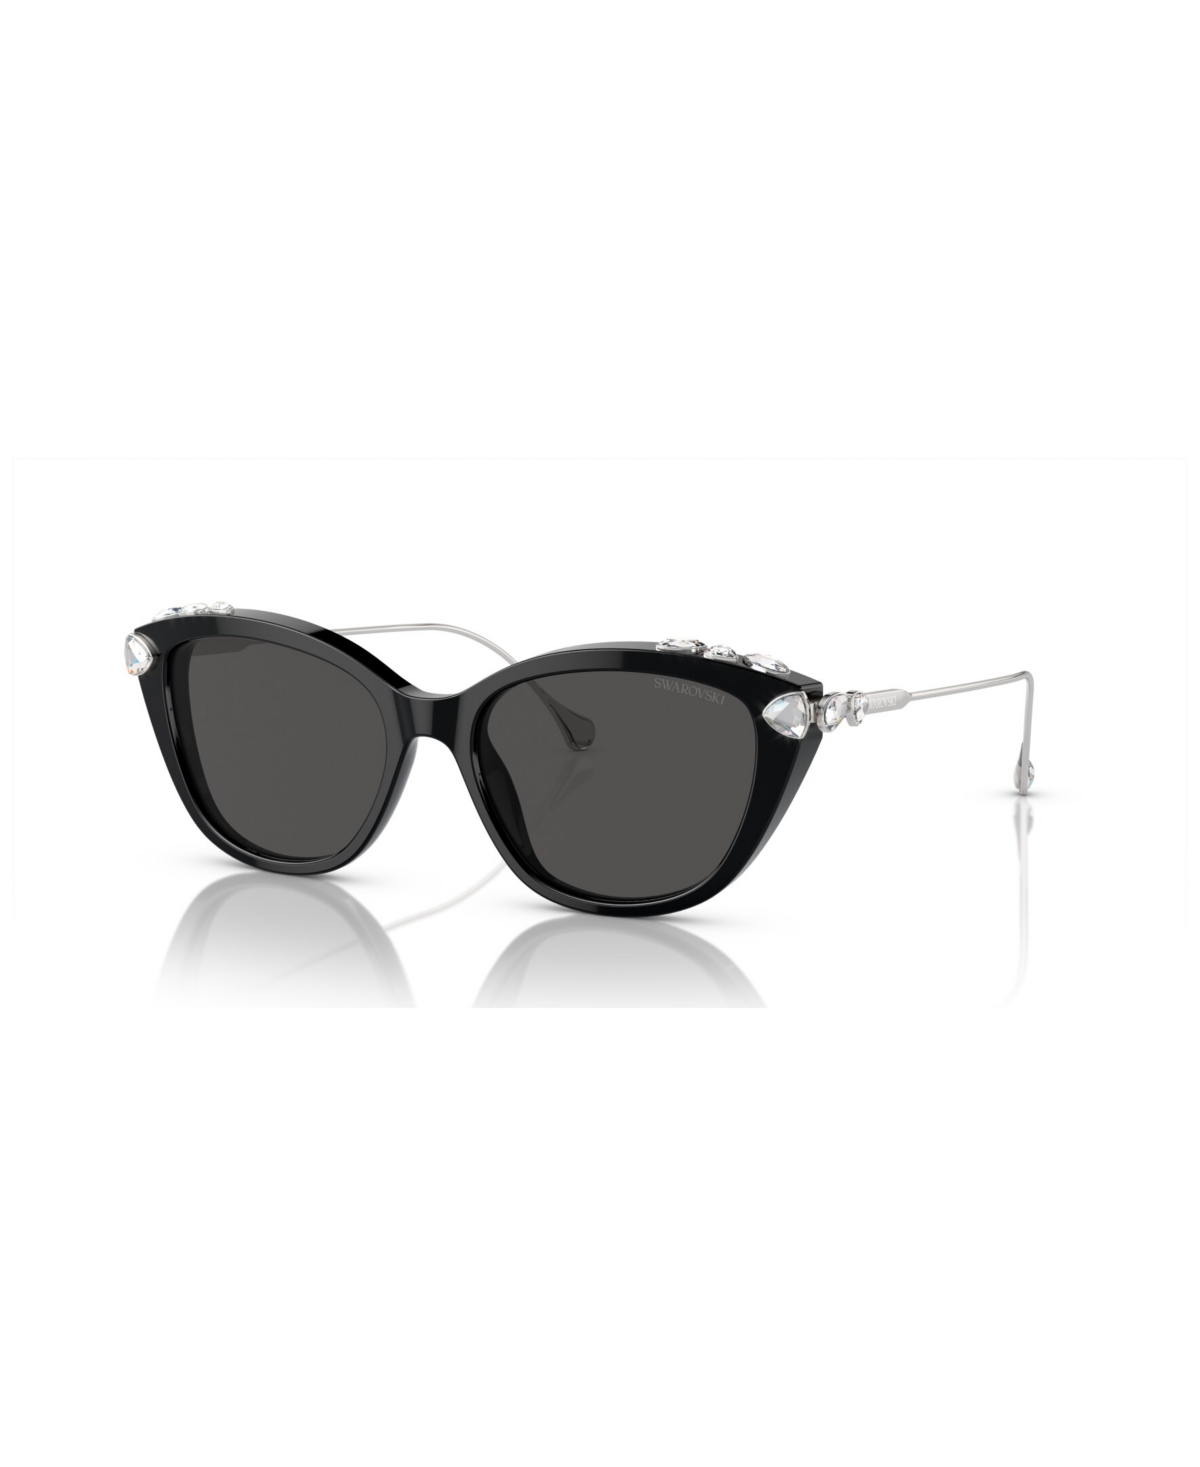 Swarovski Women's Sunglasses Sk6010 In Black